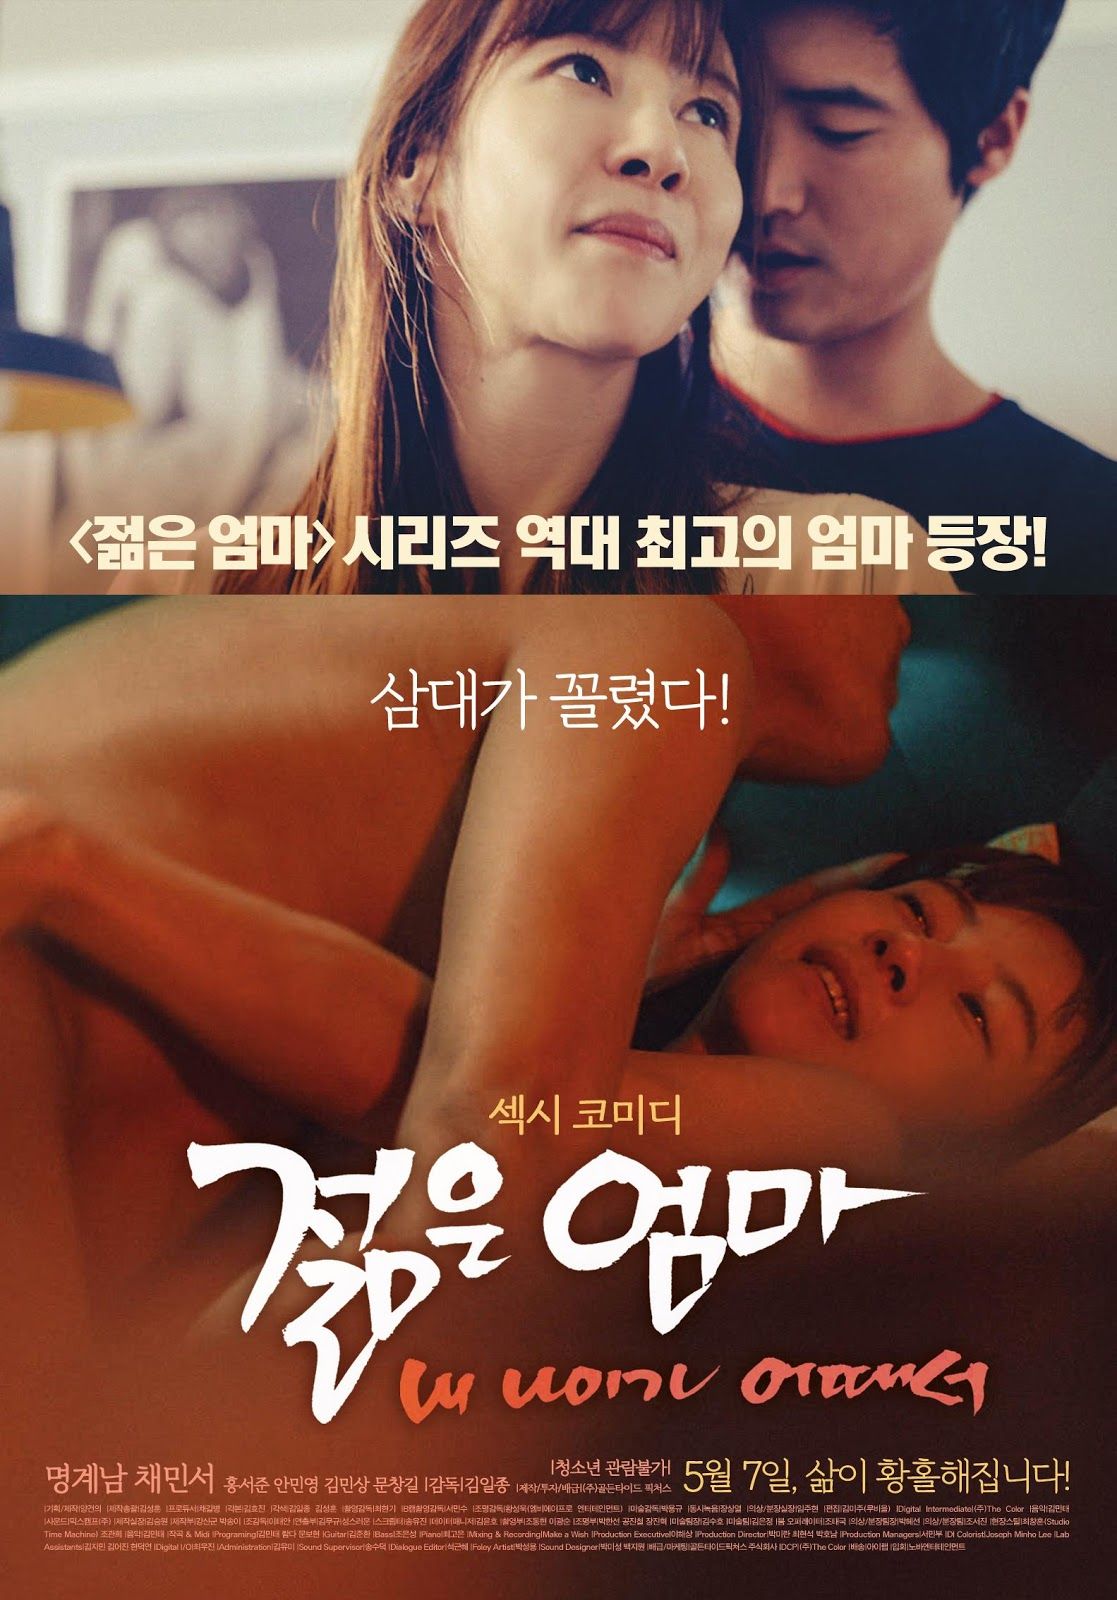 download film korea love 911 subtitle indonesia